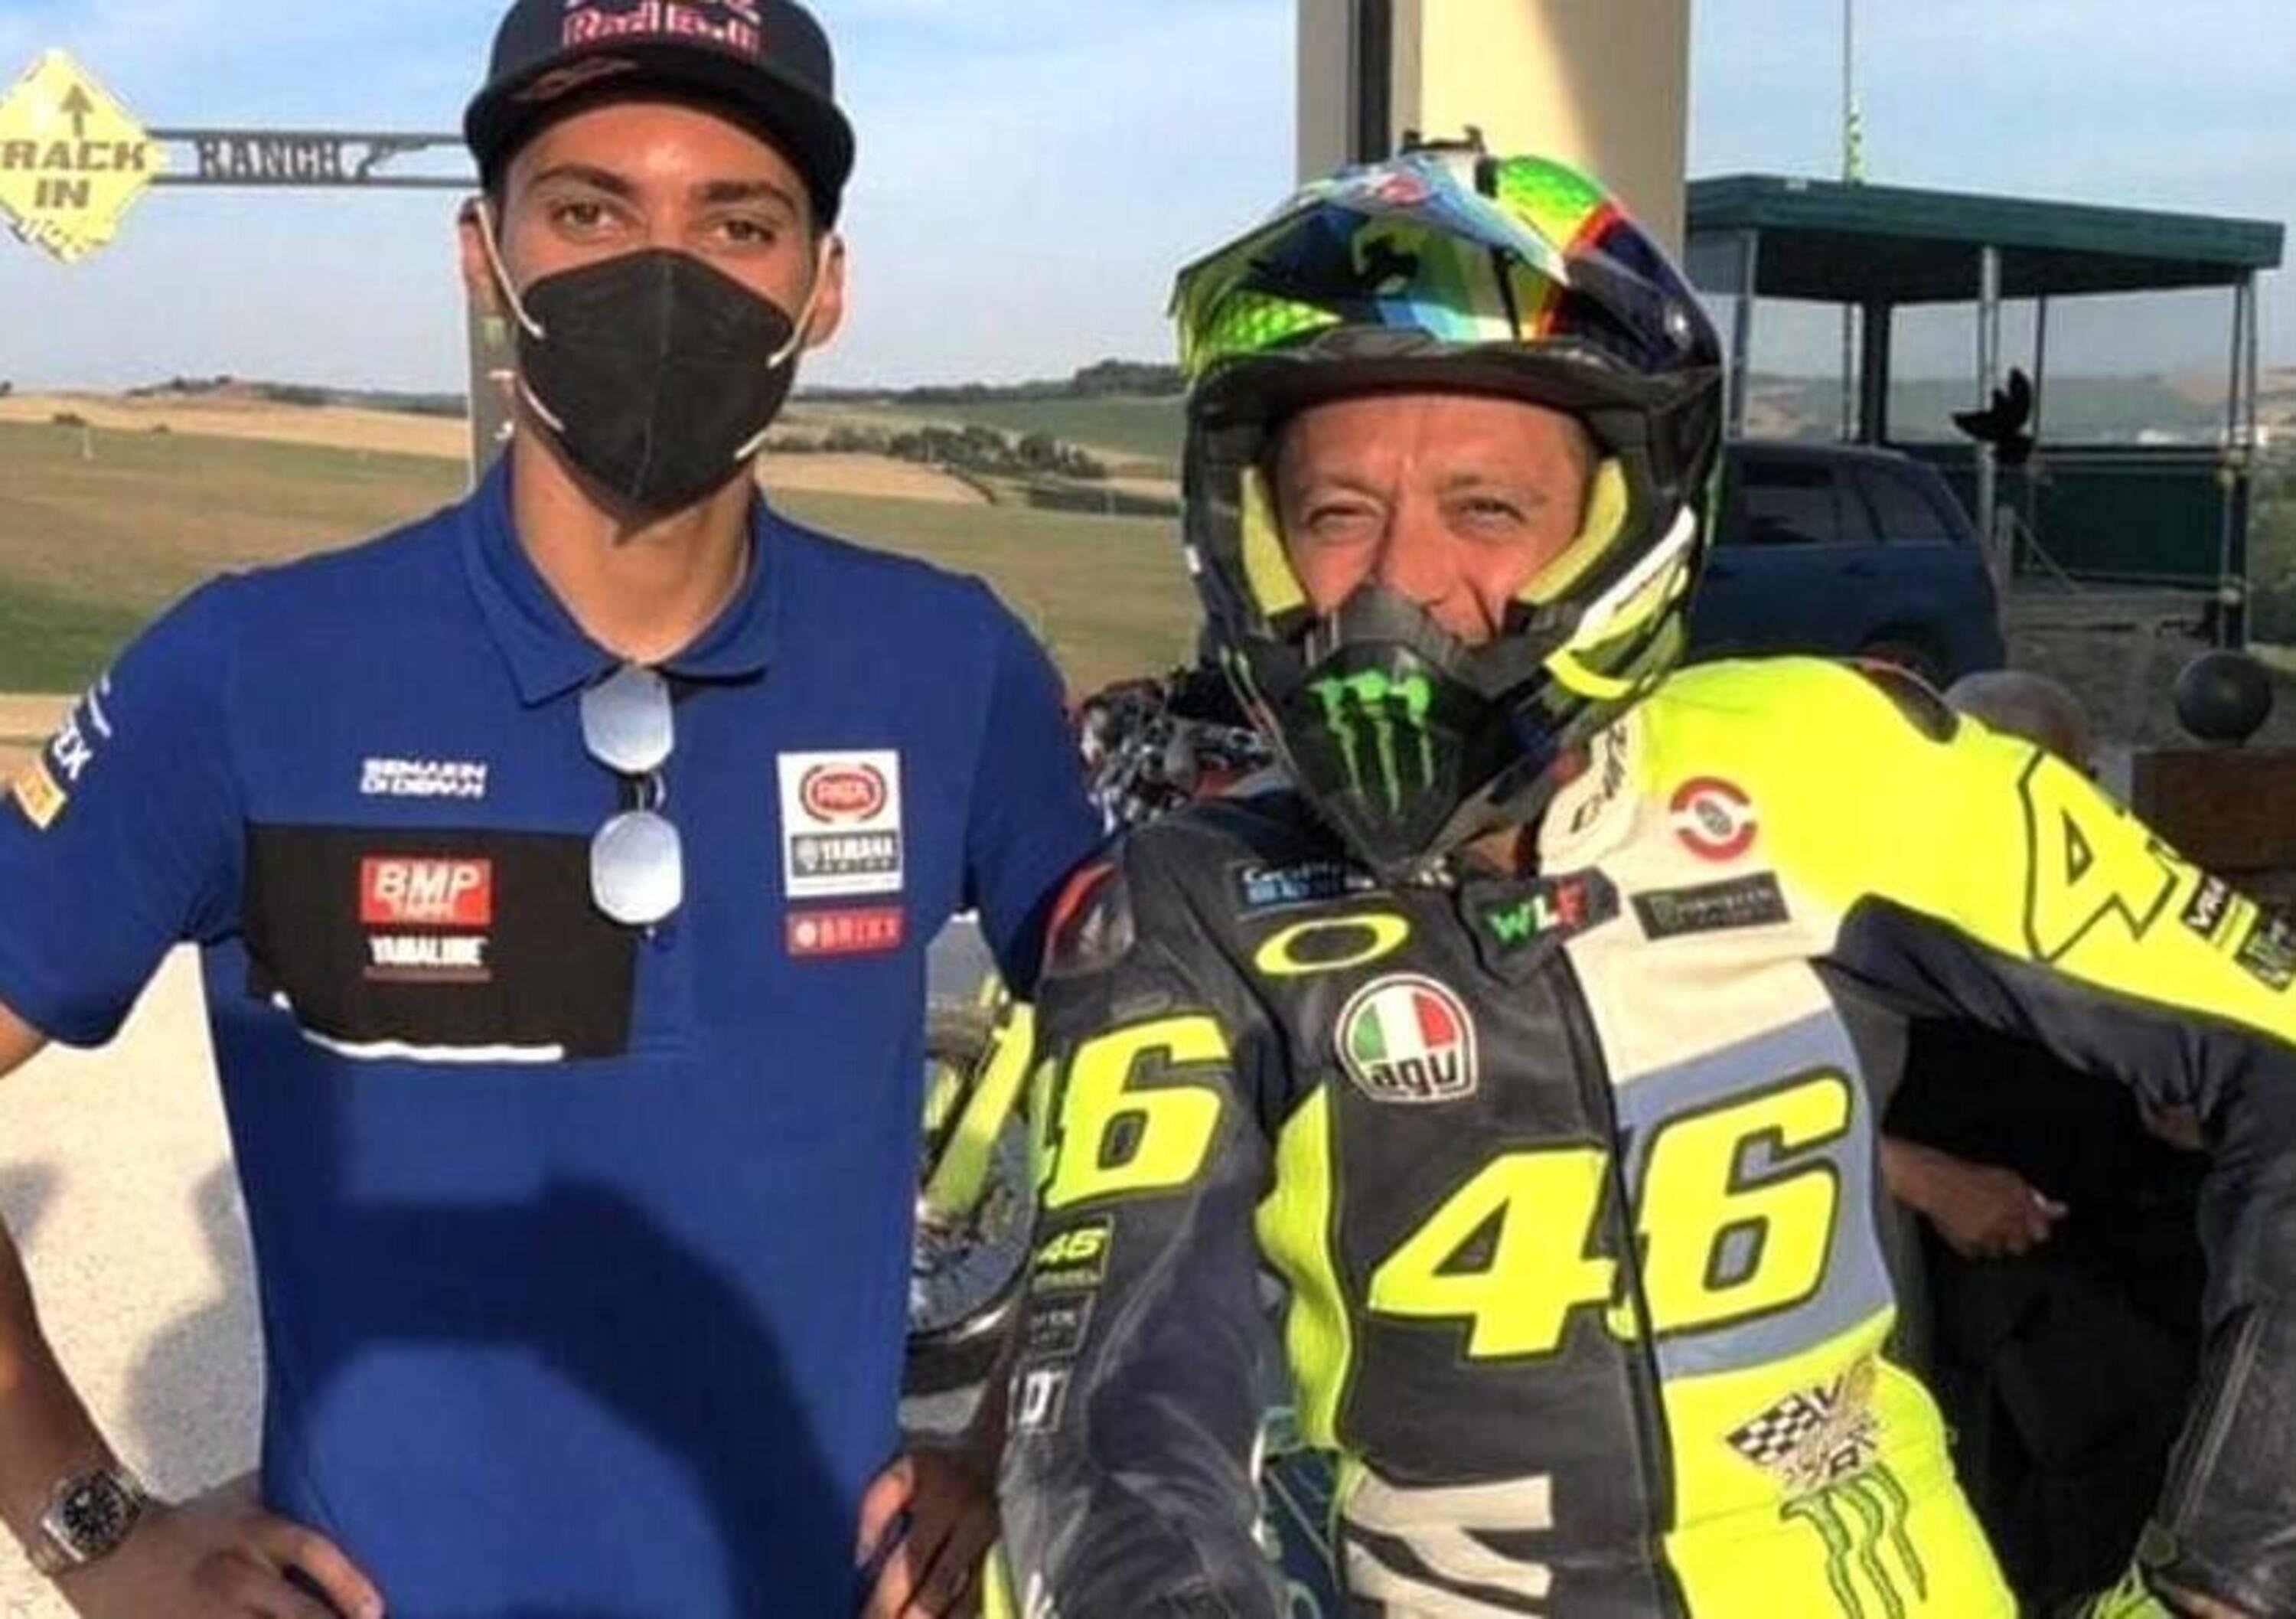 Dalla SBK alla MotoGP. Toprak Razgatlioglu e Valentino Rossi: si va verso un passaggio di consegne?